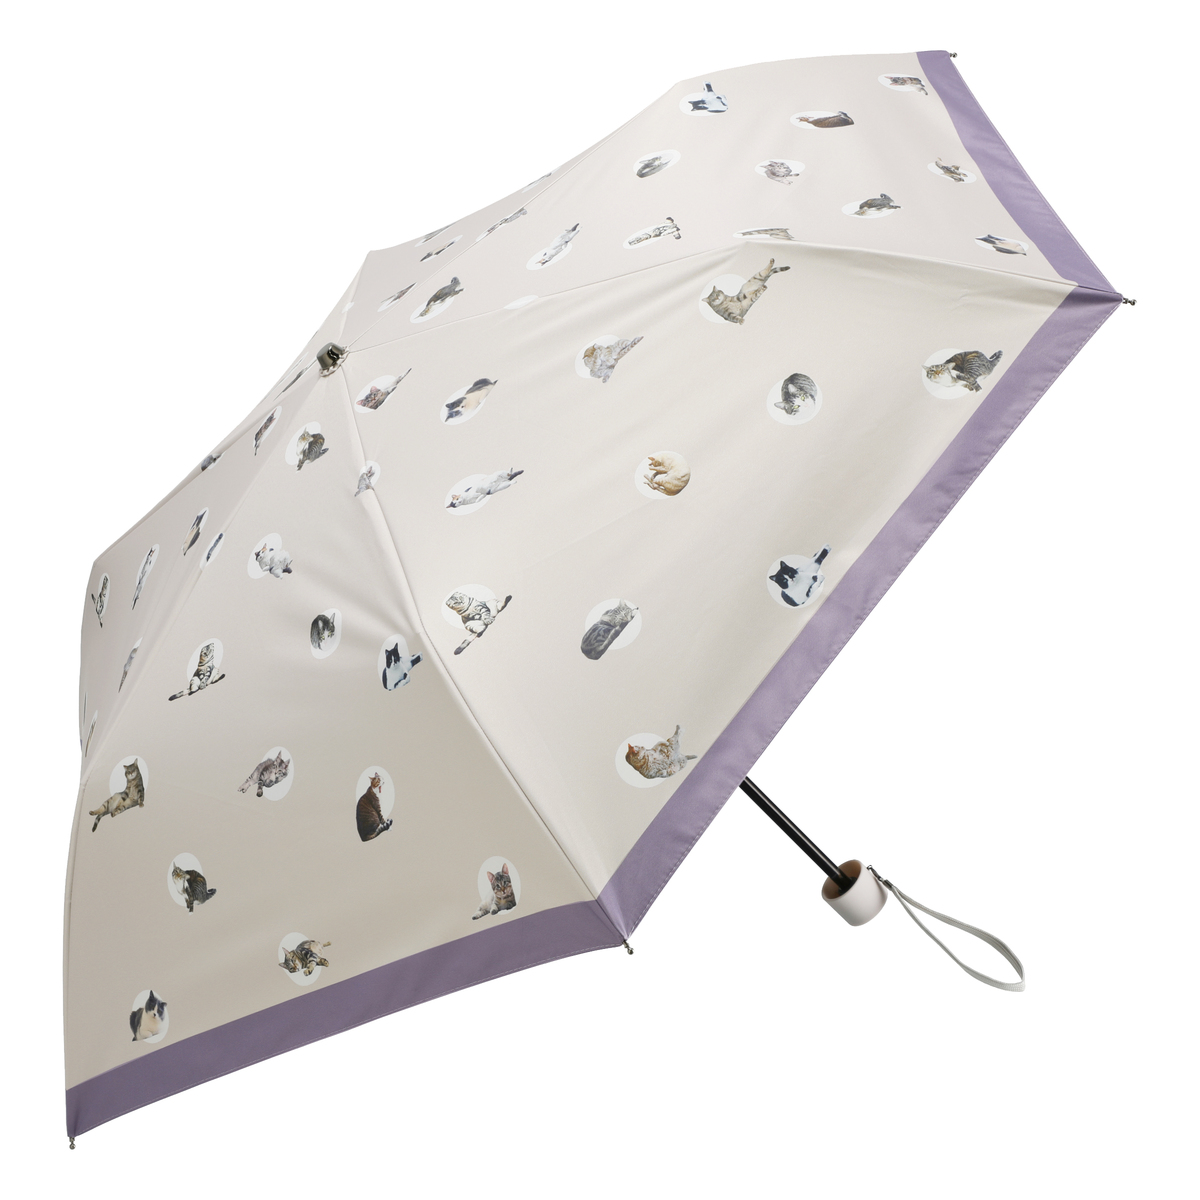 ねこと毎日 UV+1級遮光+晴雨兼用 リアルネコ折傘